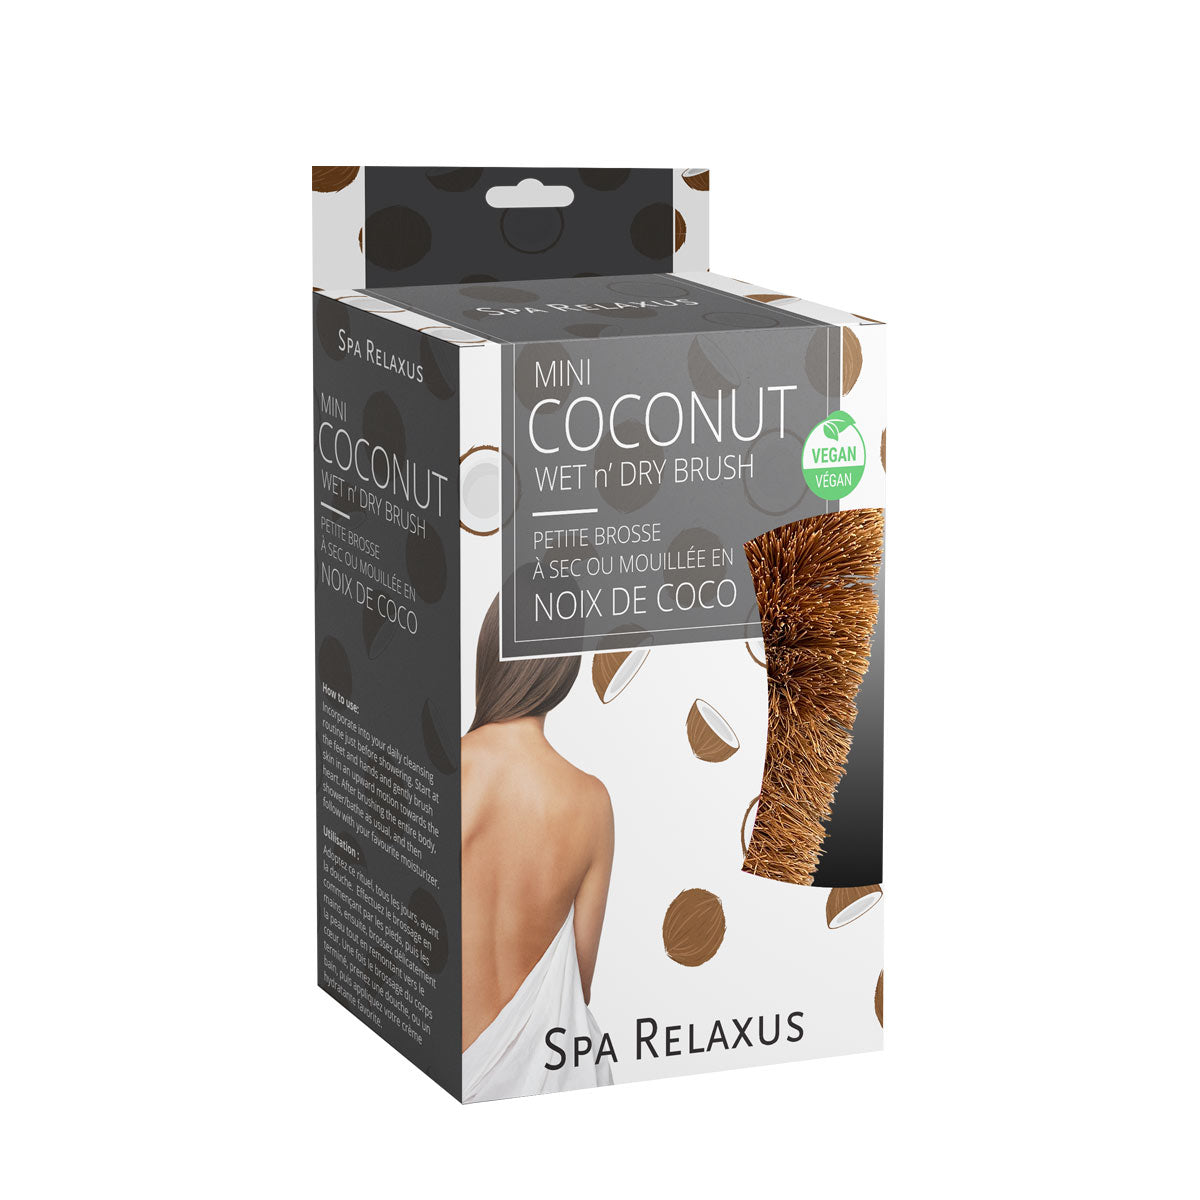 Coconut Wet n' Dry Brush Mini